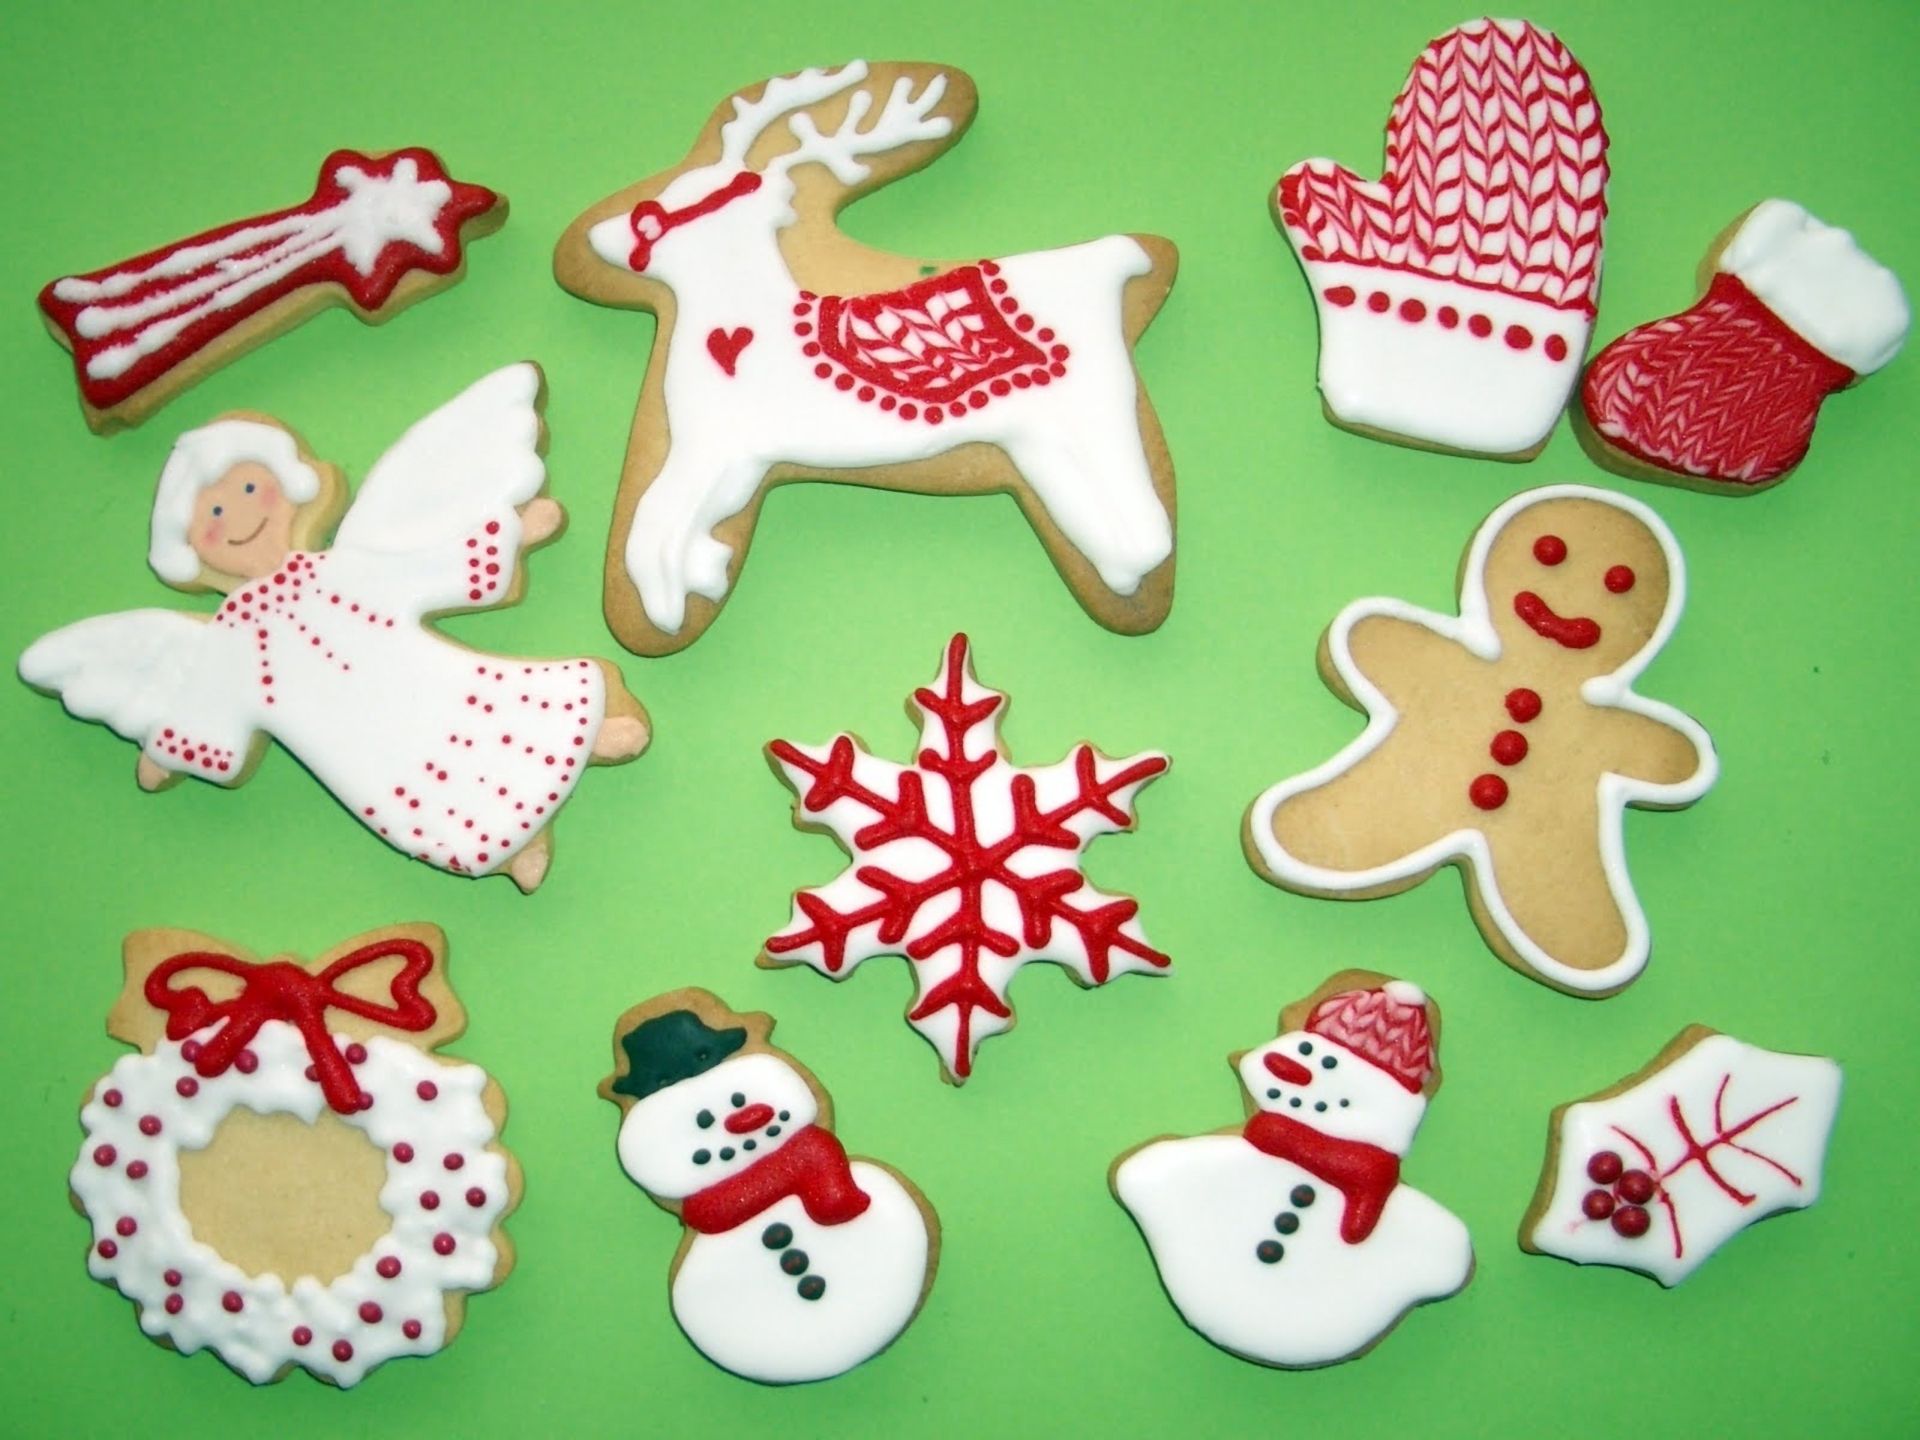 Free download wallpaper Food, Snowman, Christmas, Angel, Snowflake, Gingerbread, Cookie, Reindeer on your PC desktop